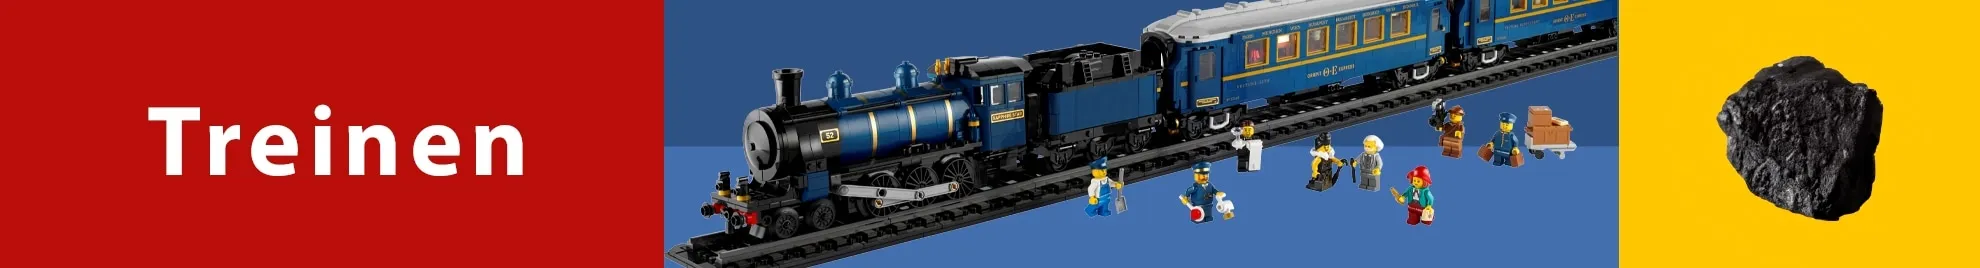 LEGO treinen banner